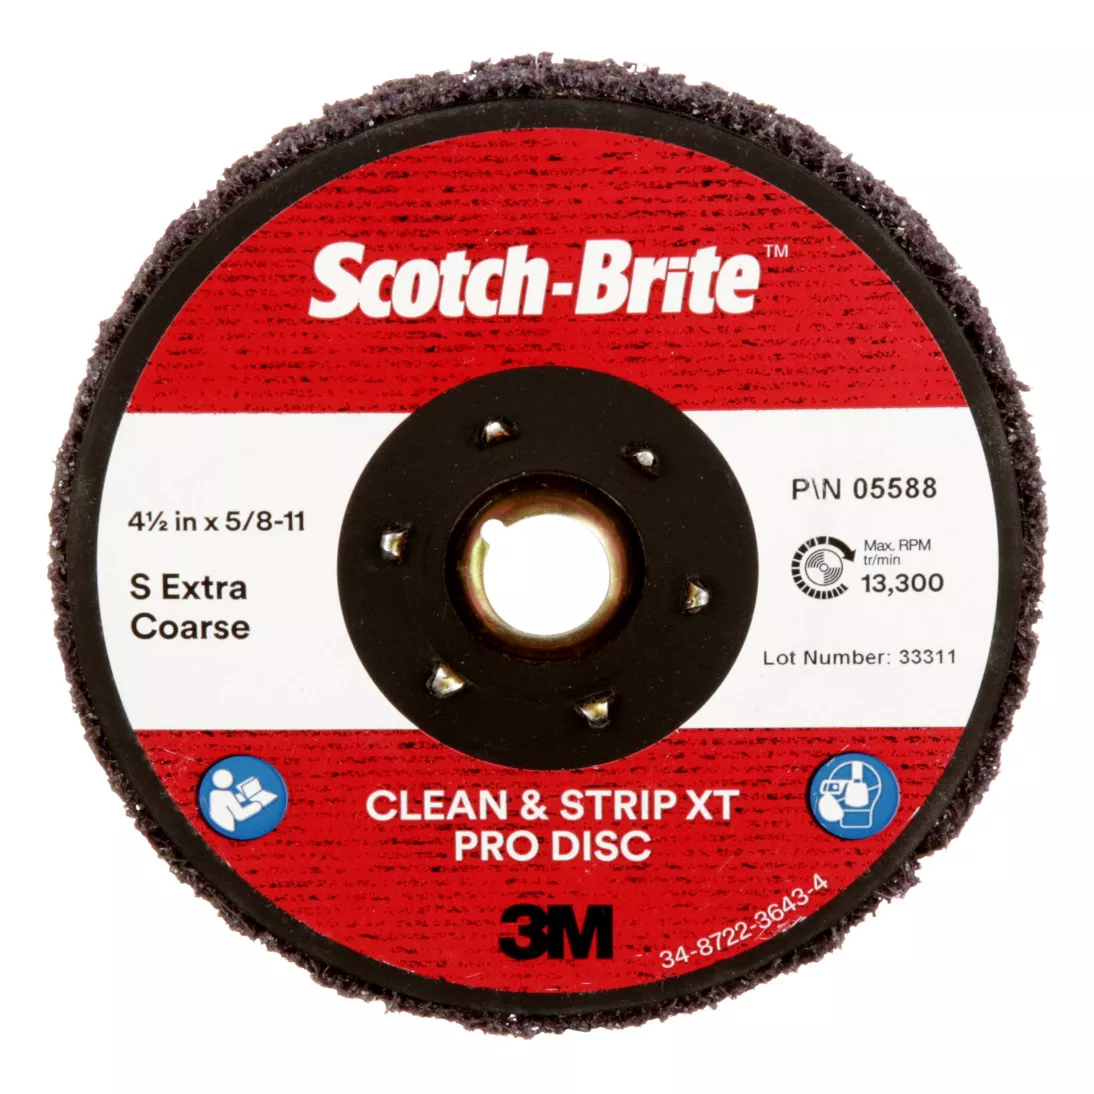 Scotch-Brite™ Clean and Strip XT Pro Disc, XO-DC, SiC Extra Coarse, TN,
Purple, 4-1/2 in x 5/8